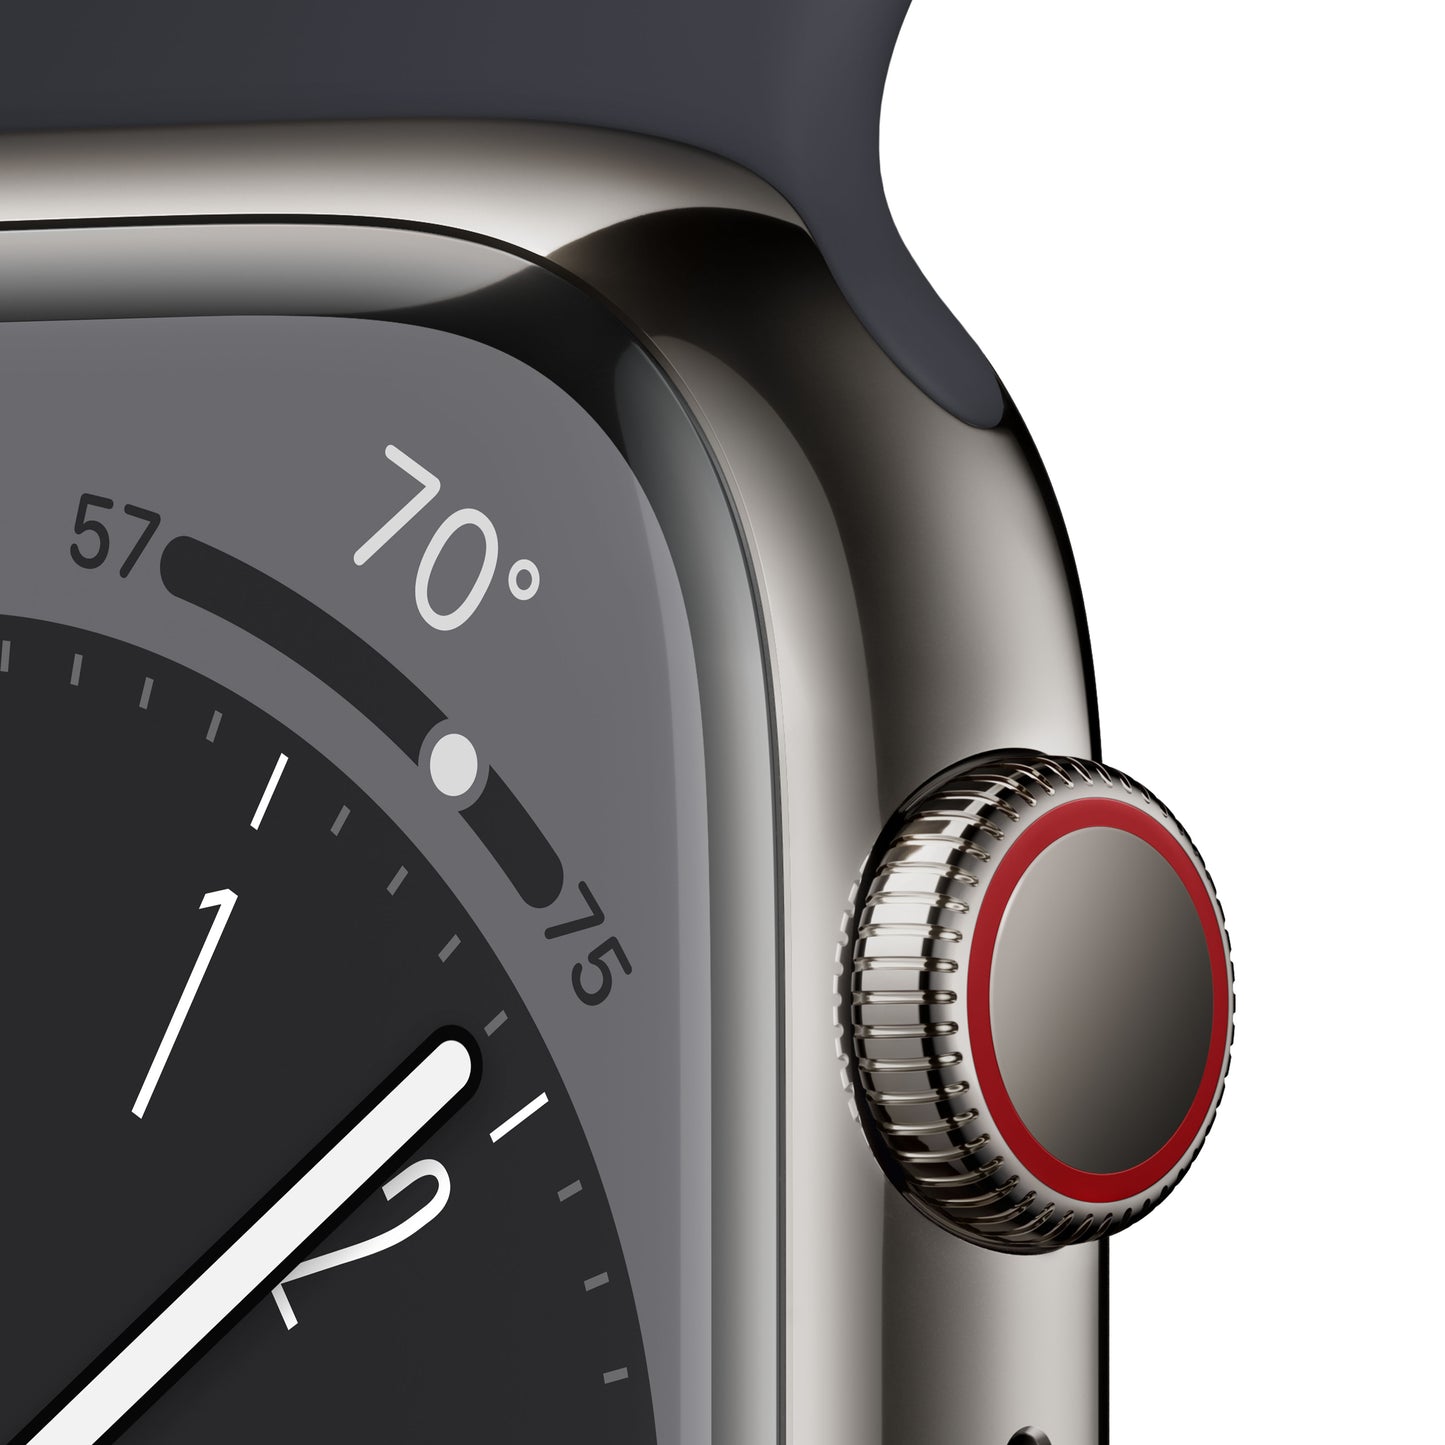 Apple Watch Series 8 (GPS  + Cellular) de 41 mm - Caja de acero inoxidable en grafito - Correa deportiva en color medianoche - Talla única